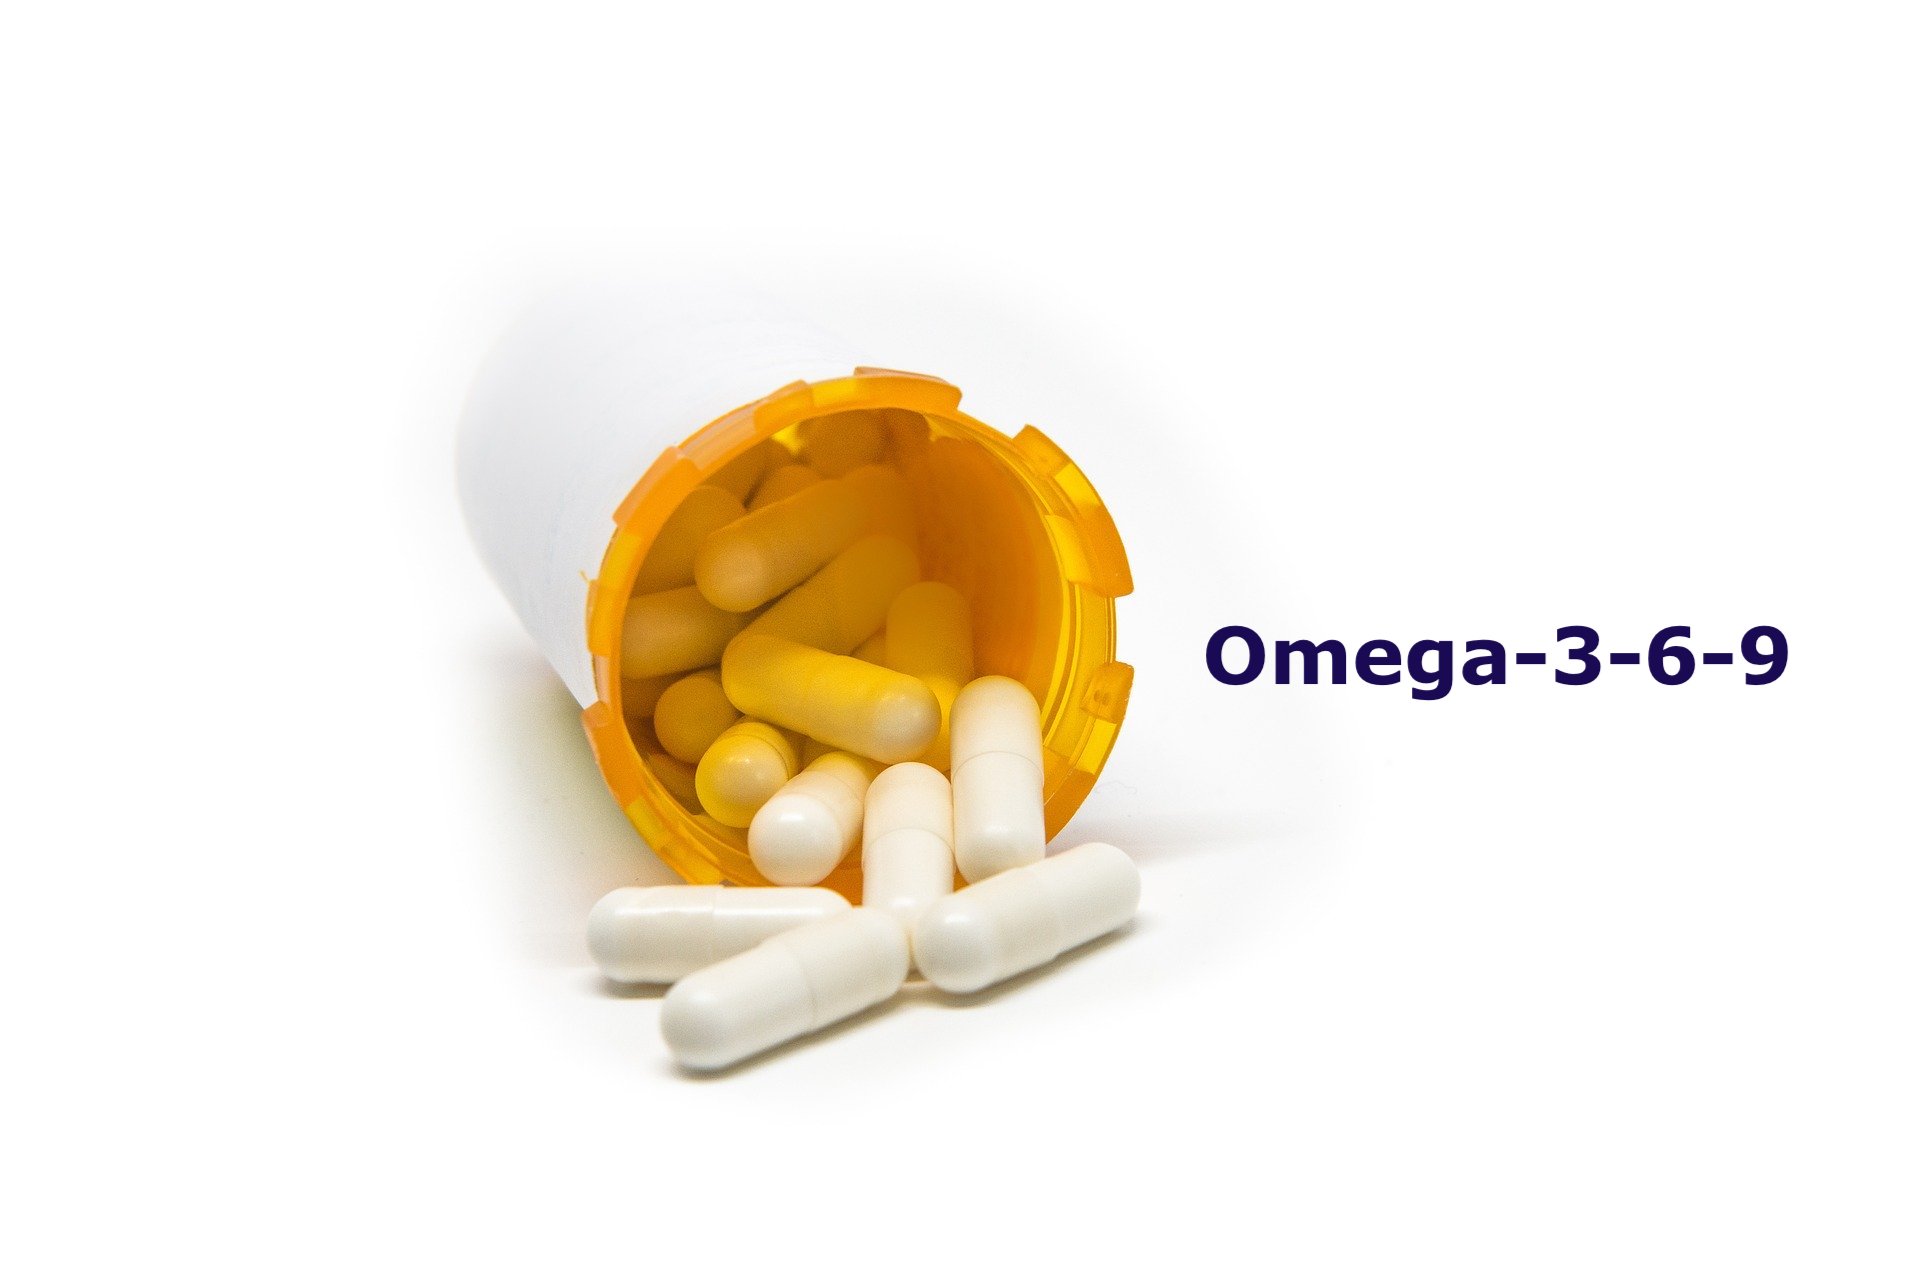 Mi a különbség az omega-3, -6 és -9 zsírsavak között?